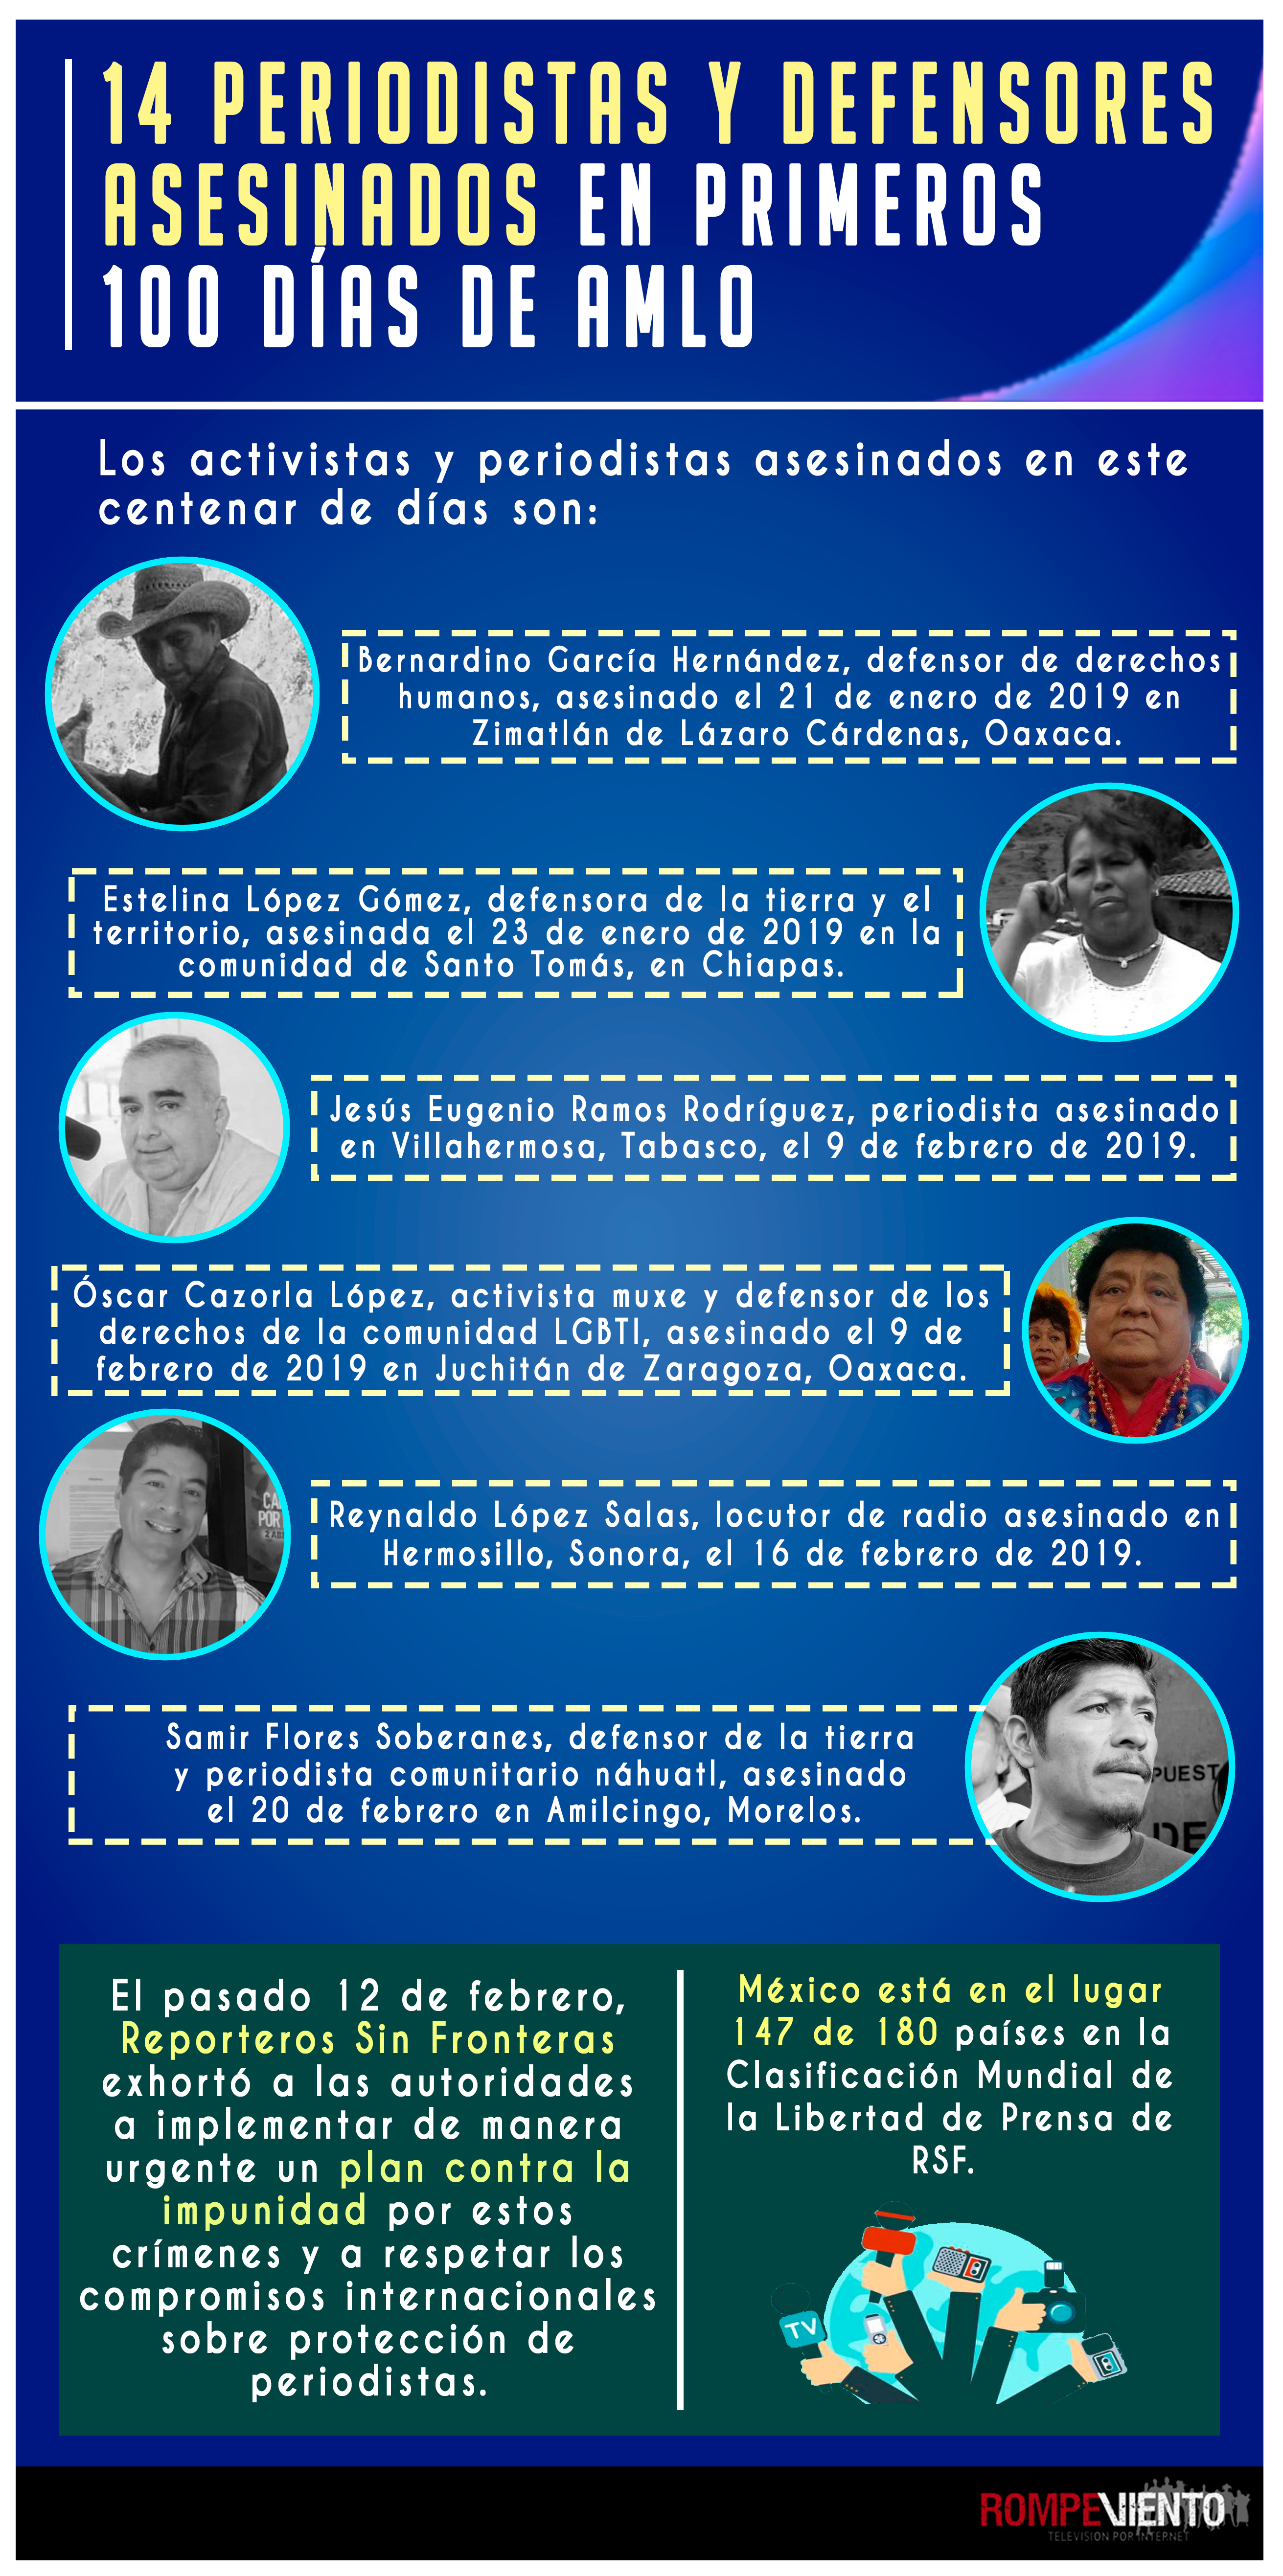 14 periodistas y defensores asesinados en primeros 100 días de AMLO